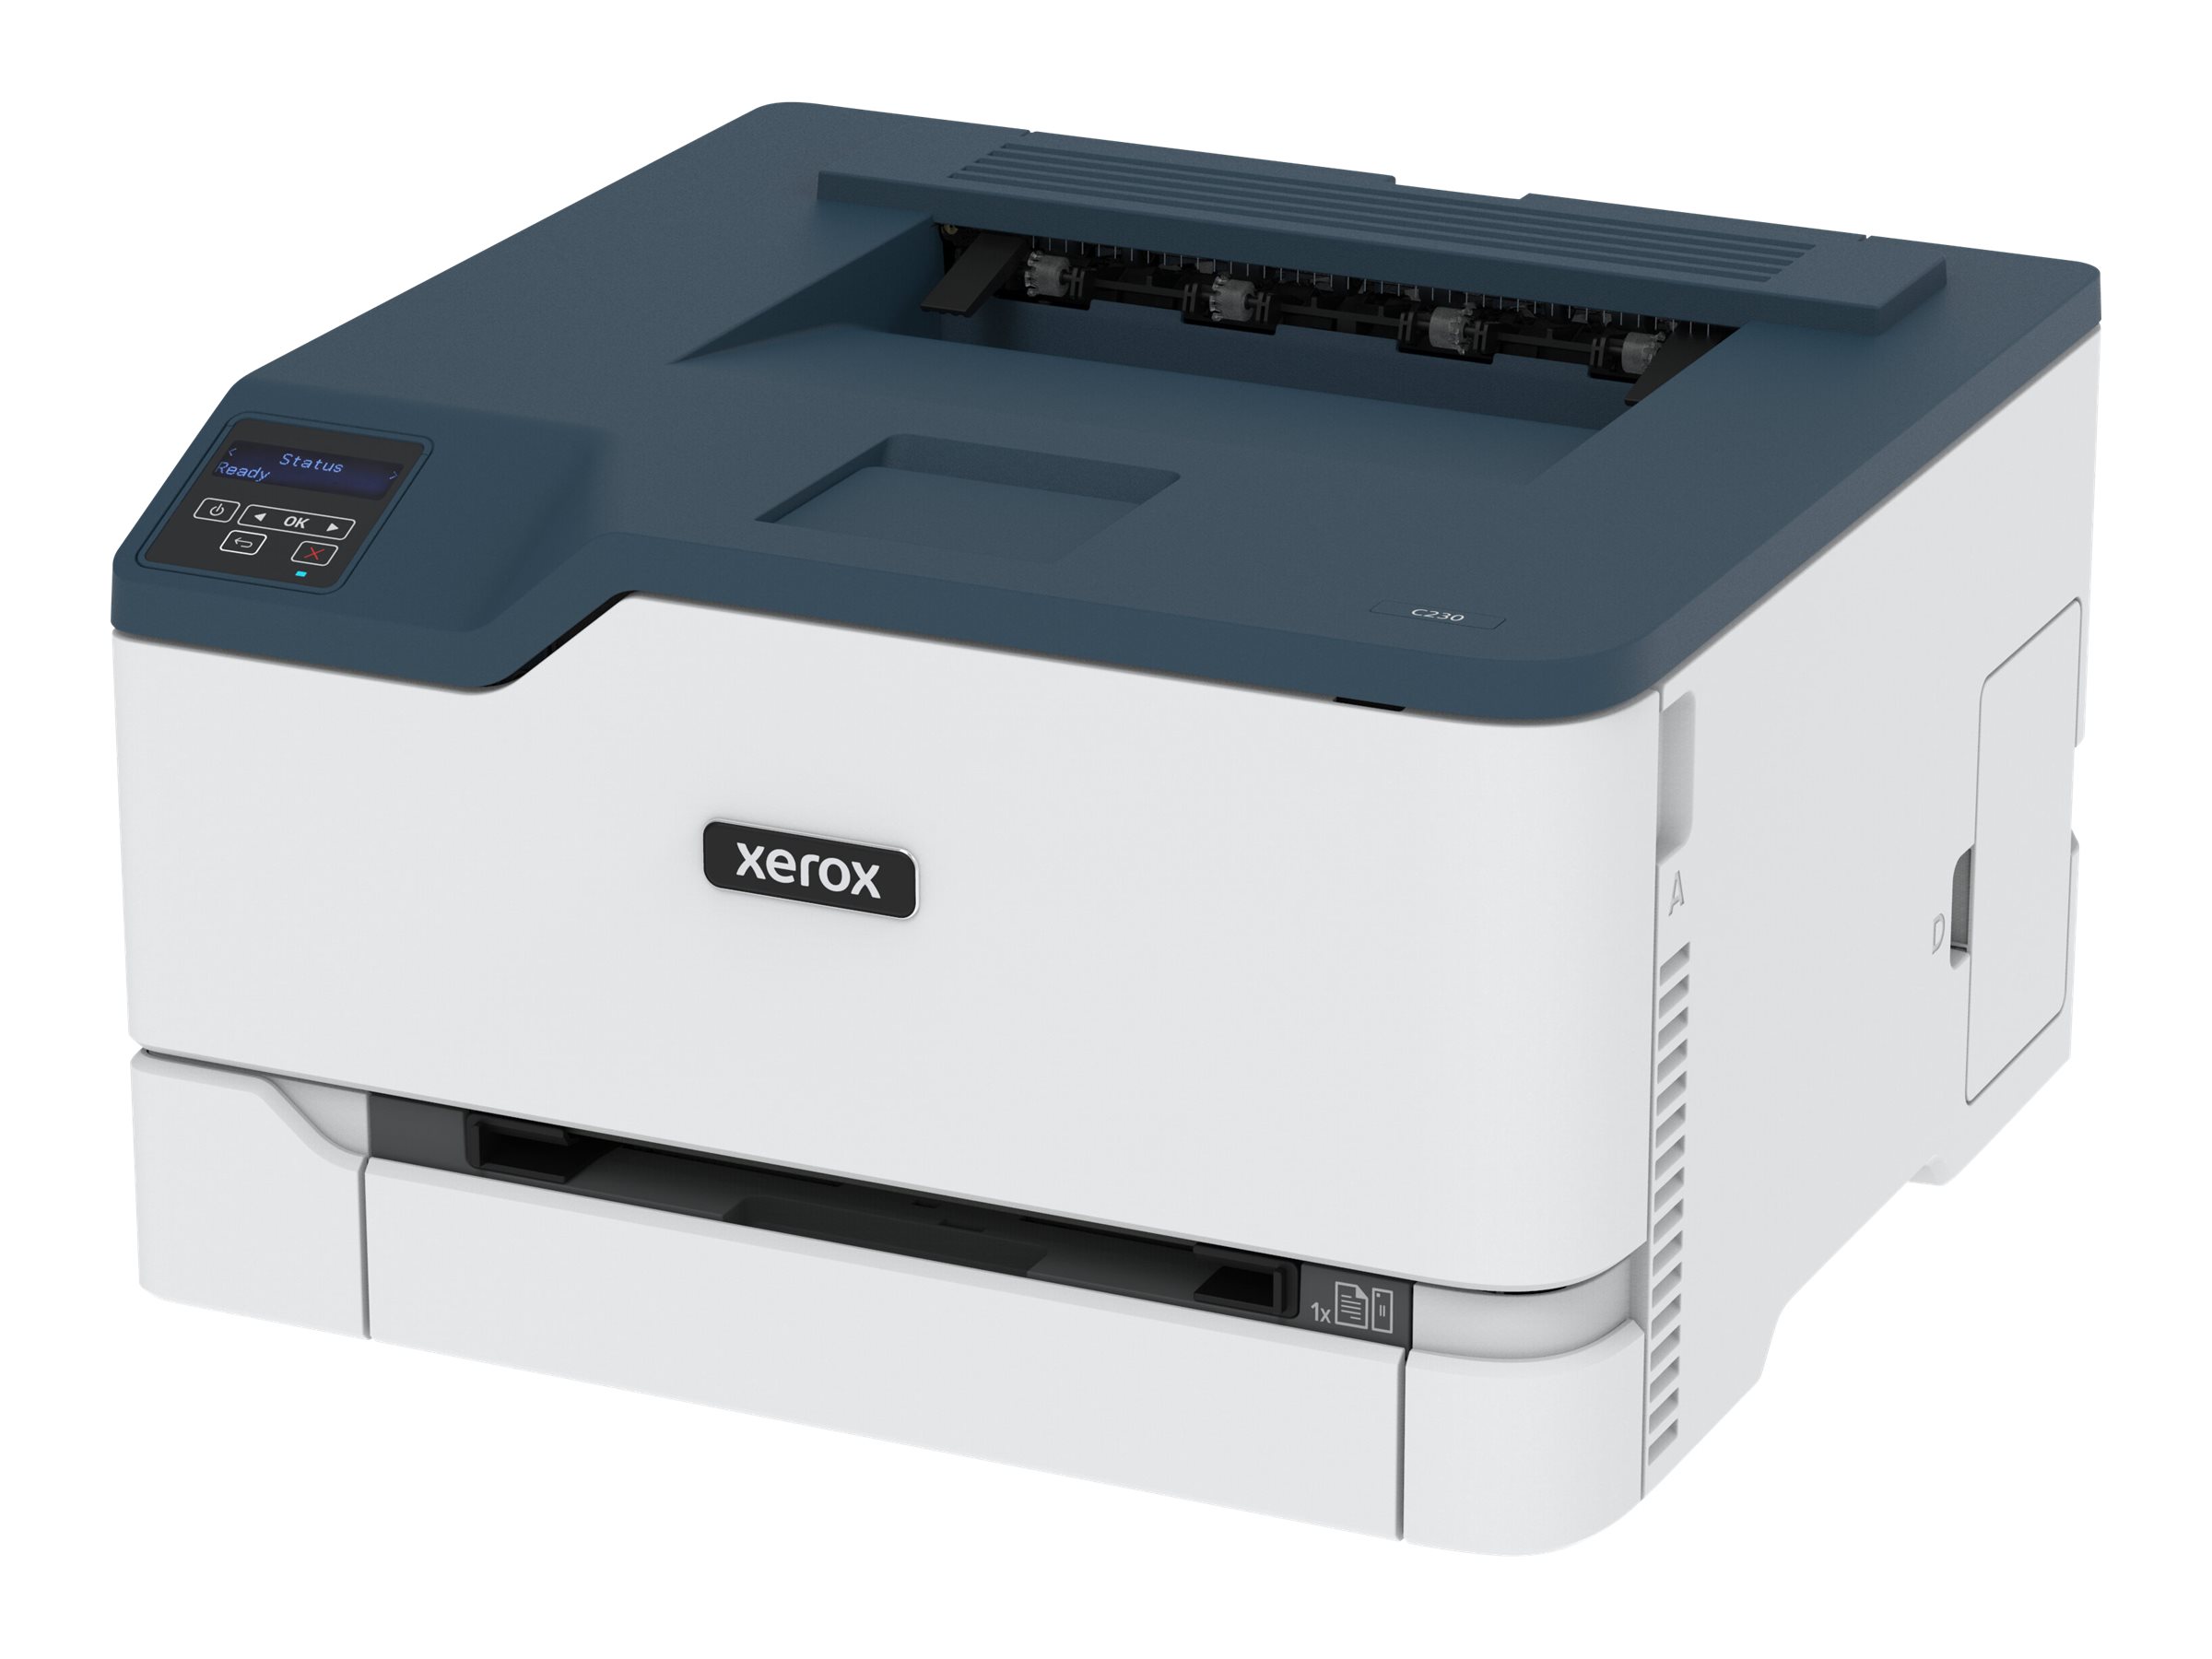 Xerox C230 - Imprimante - couleur - Recto-verso - laser - 216 x 340 mm - 600 x 600 ppp - jusqu'à 22 ppm (mono) / jusqu'à 22 ppm (couleur) - capacité : 250 feuilles - USB 2.0, LAN, Wi-Fi(n), hôte USB 2.0 - C230V_DNI - Imprimantes laser couleur